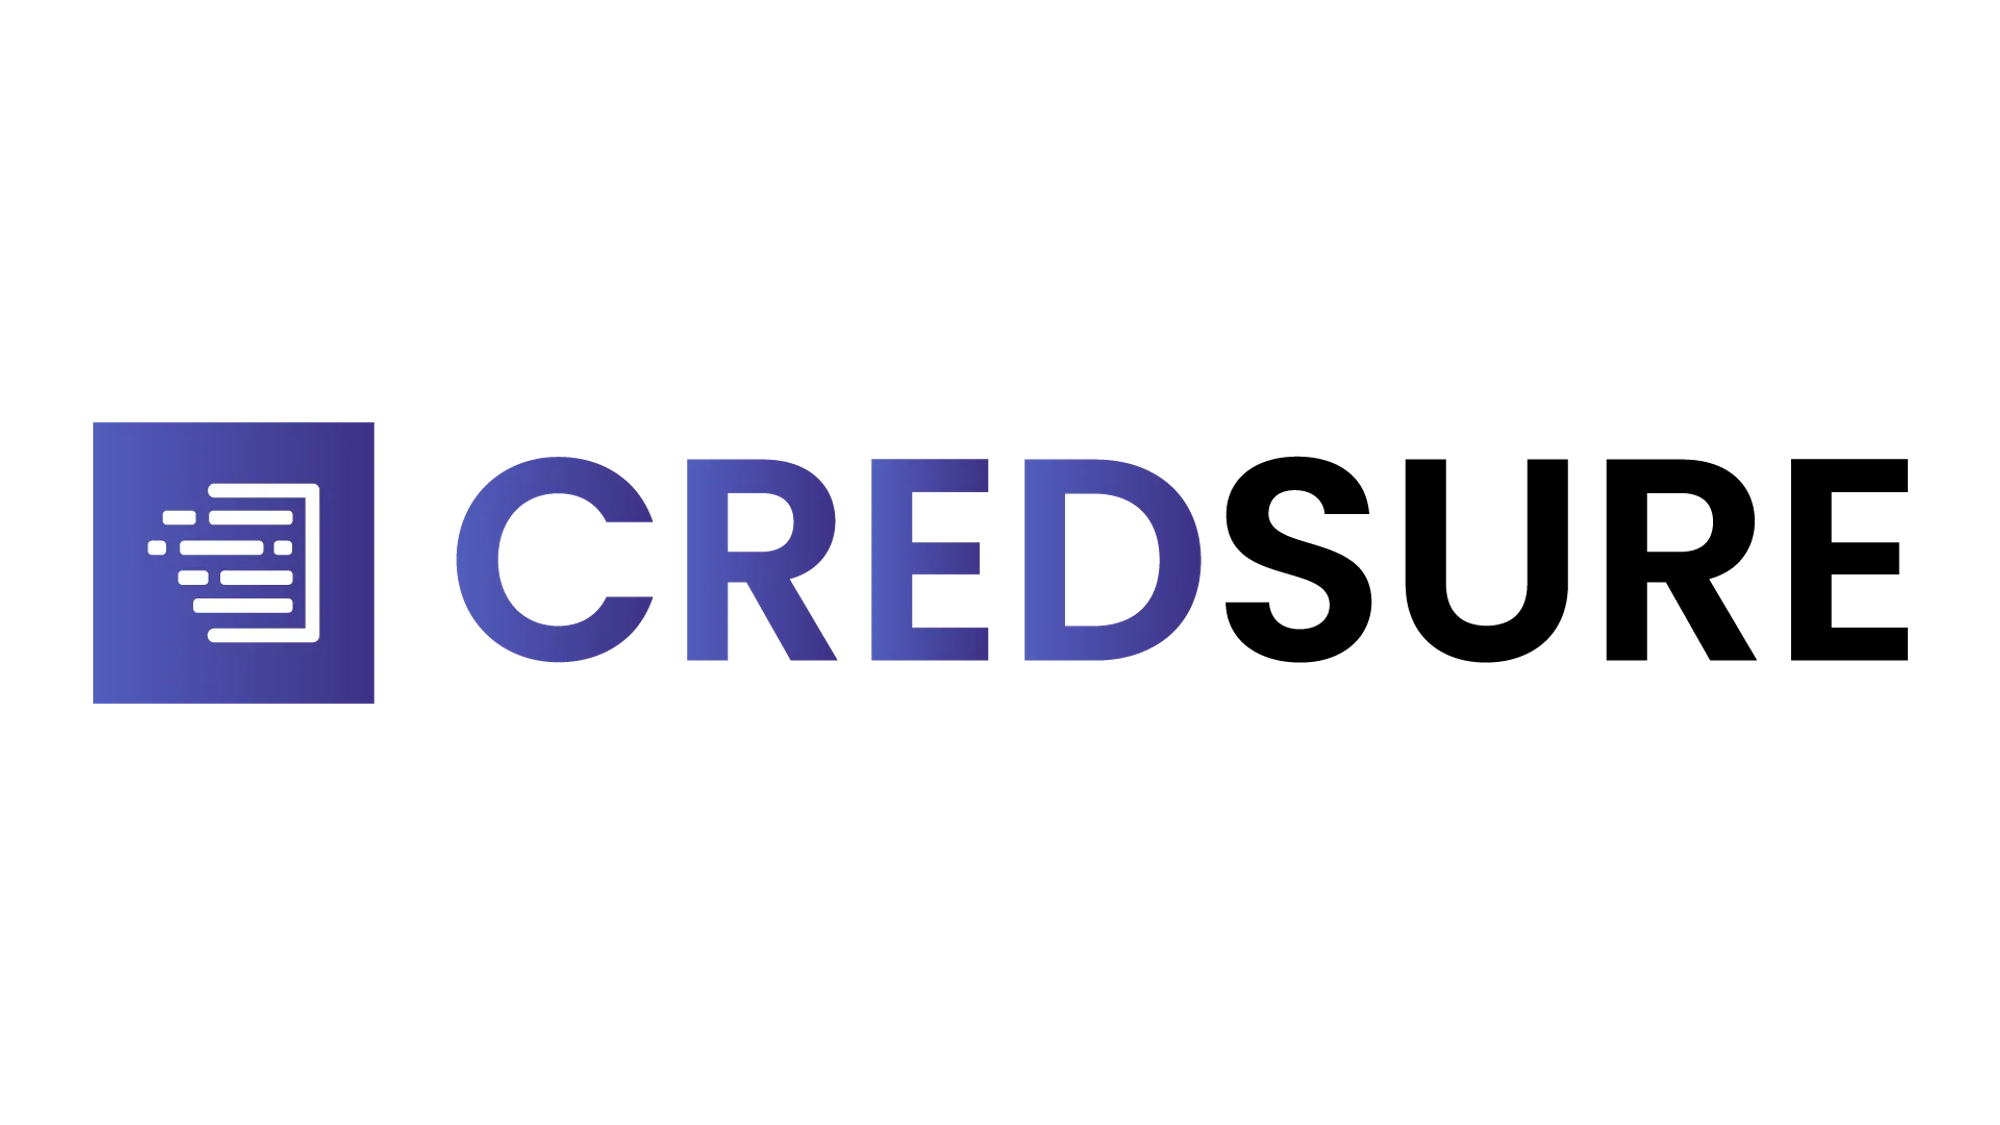                     CredSure logo